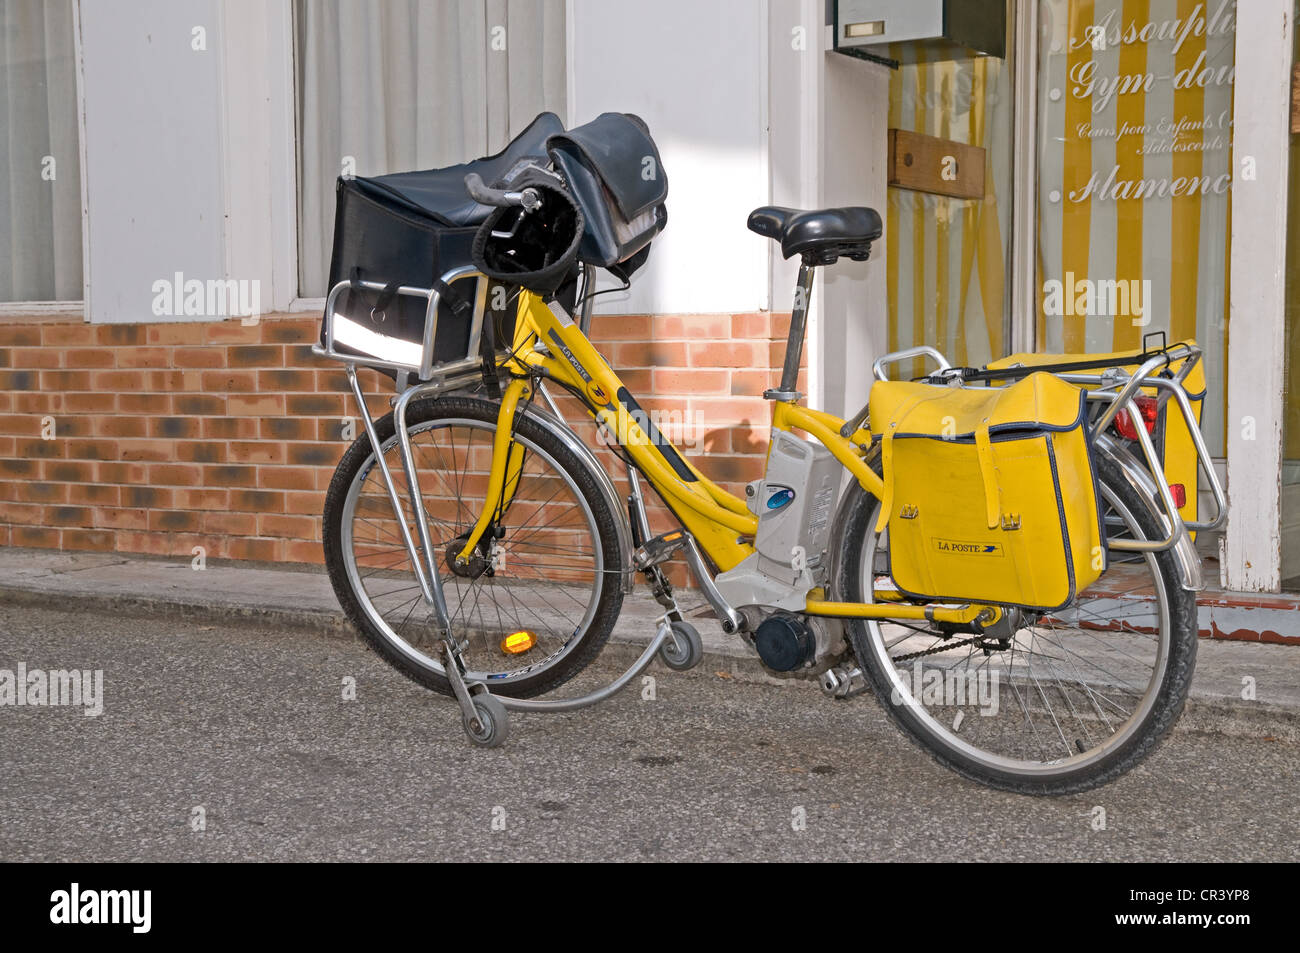 Vélo jaune de La Poste la distribution du courrier dans la Grand Rue Sainte  Foy les Lyon France Photo Stock - Alamy